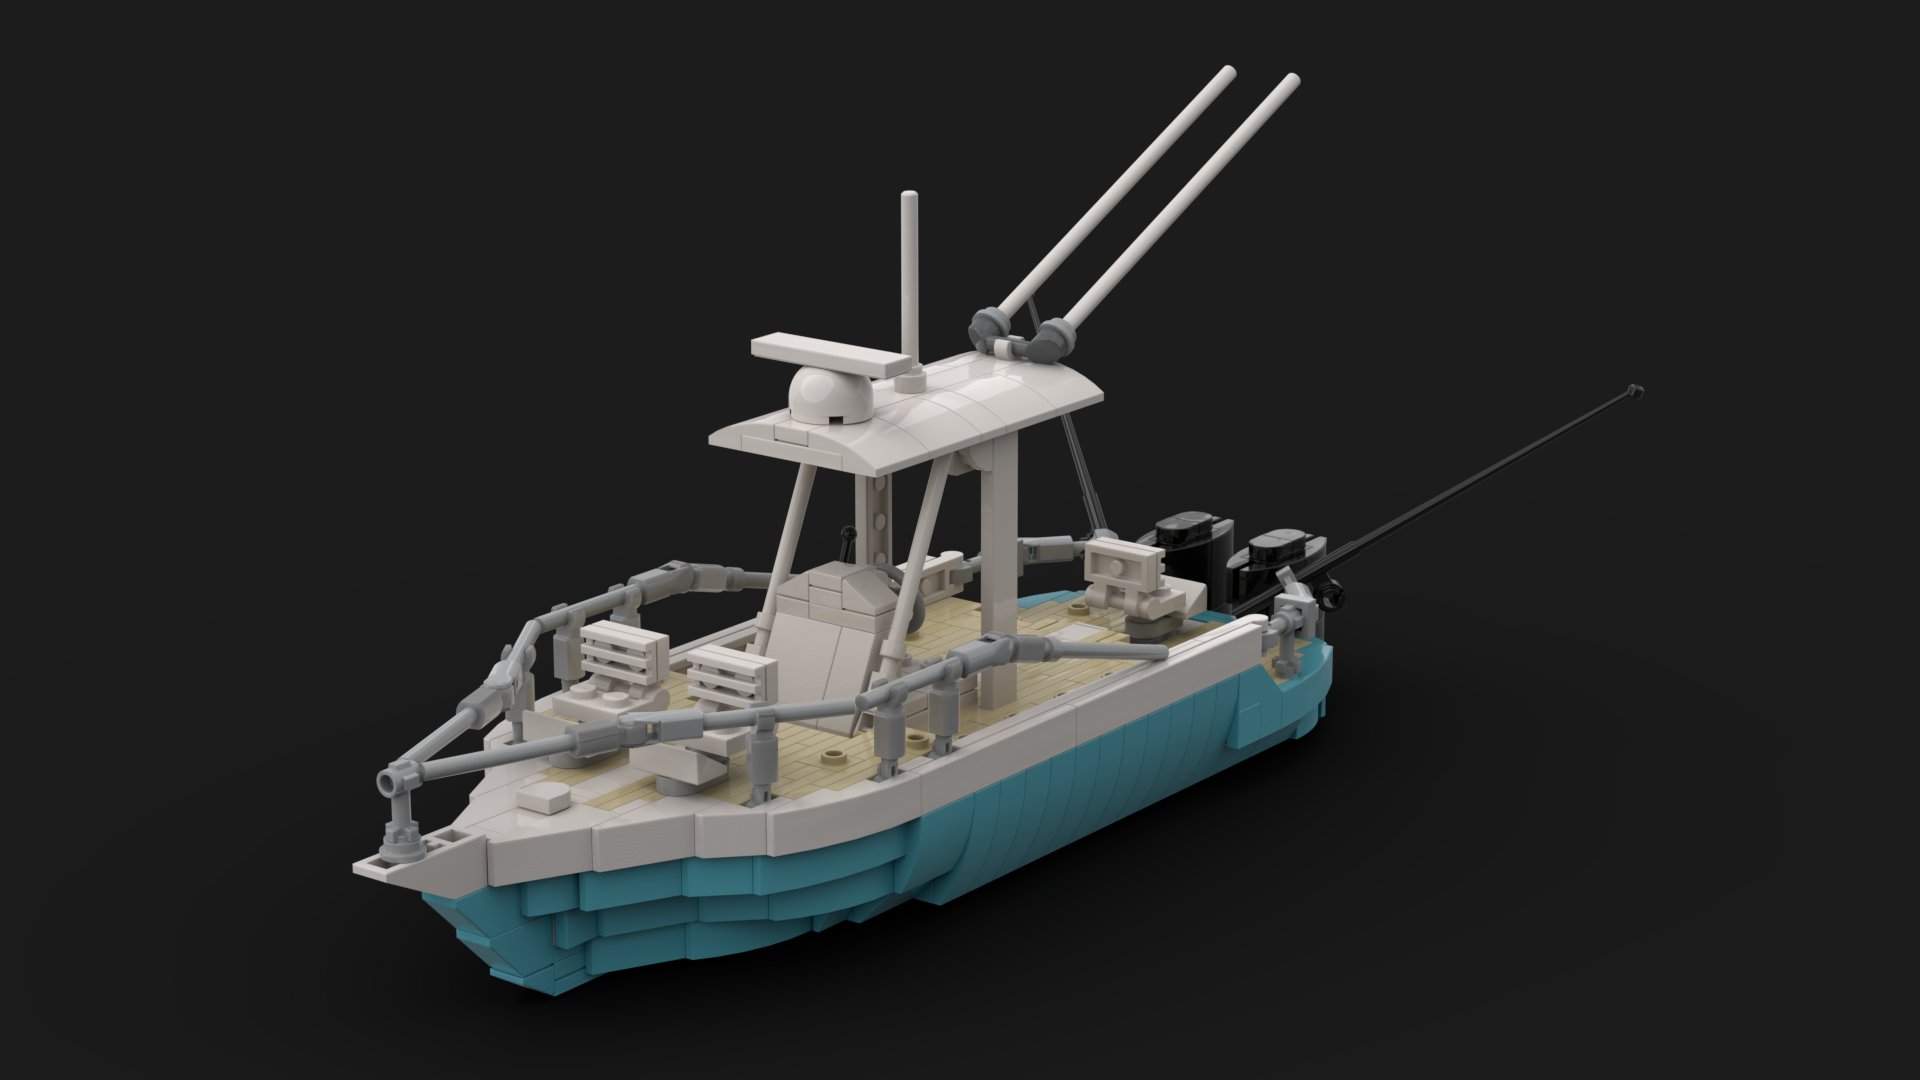 LEGO MOC Fishing Boat by AsgardianStudio